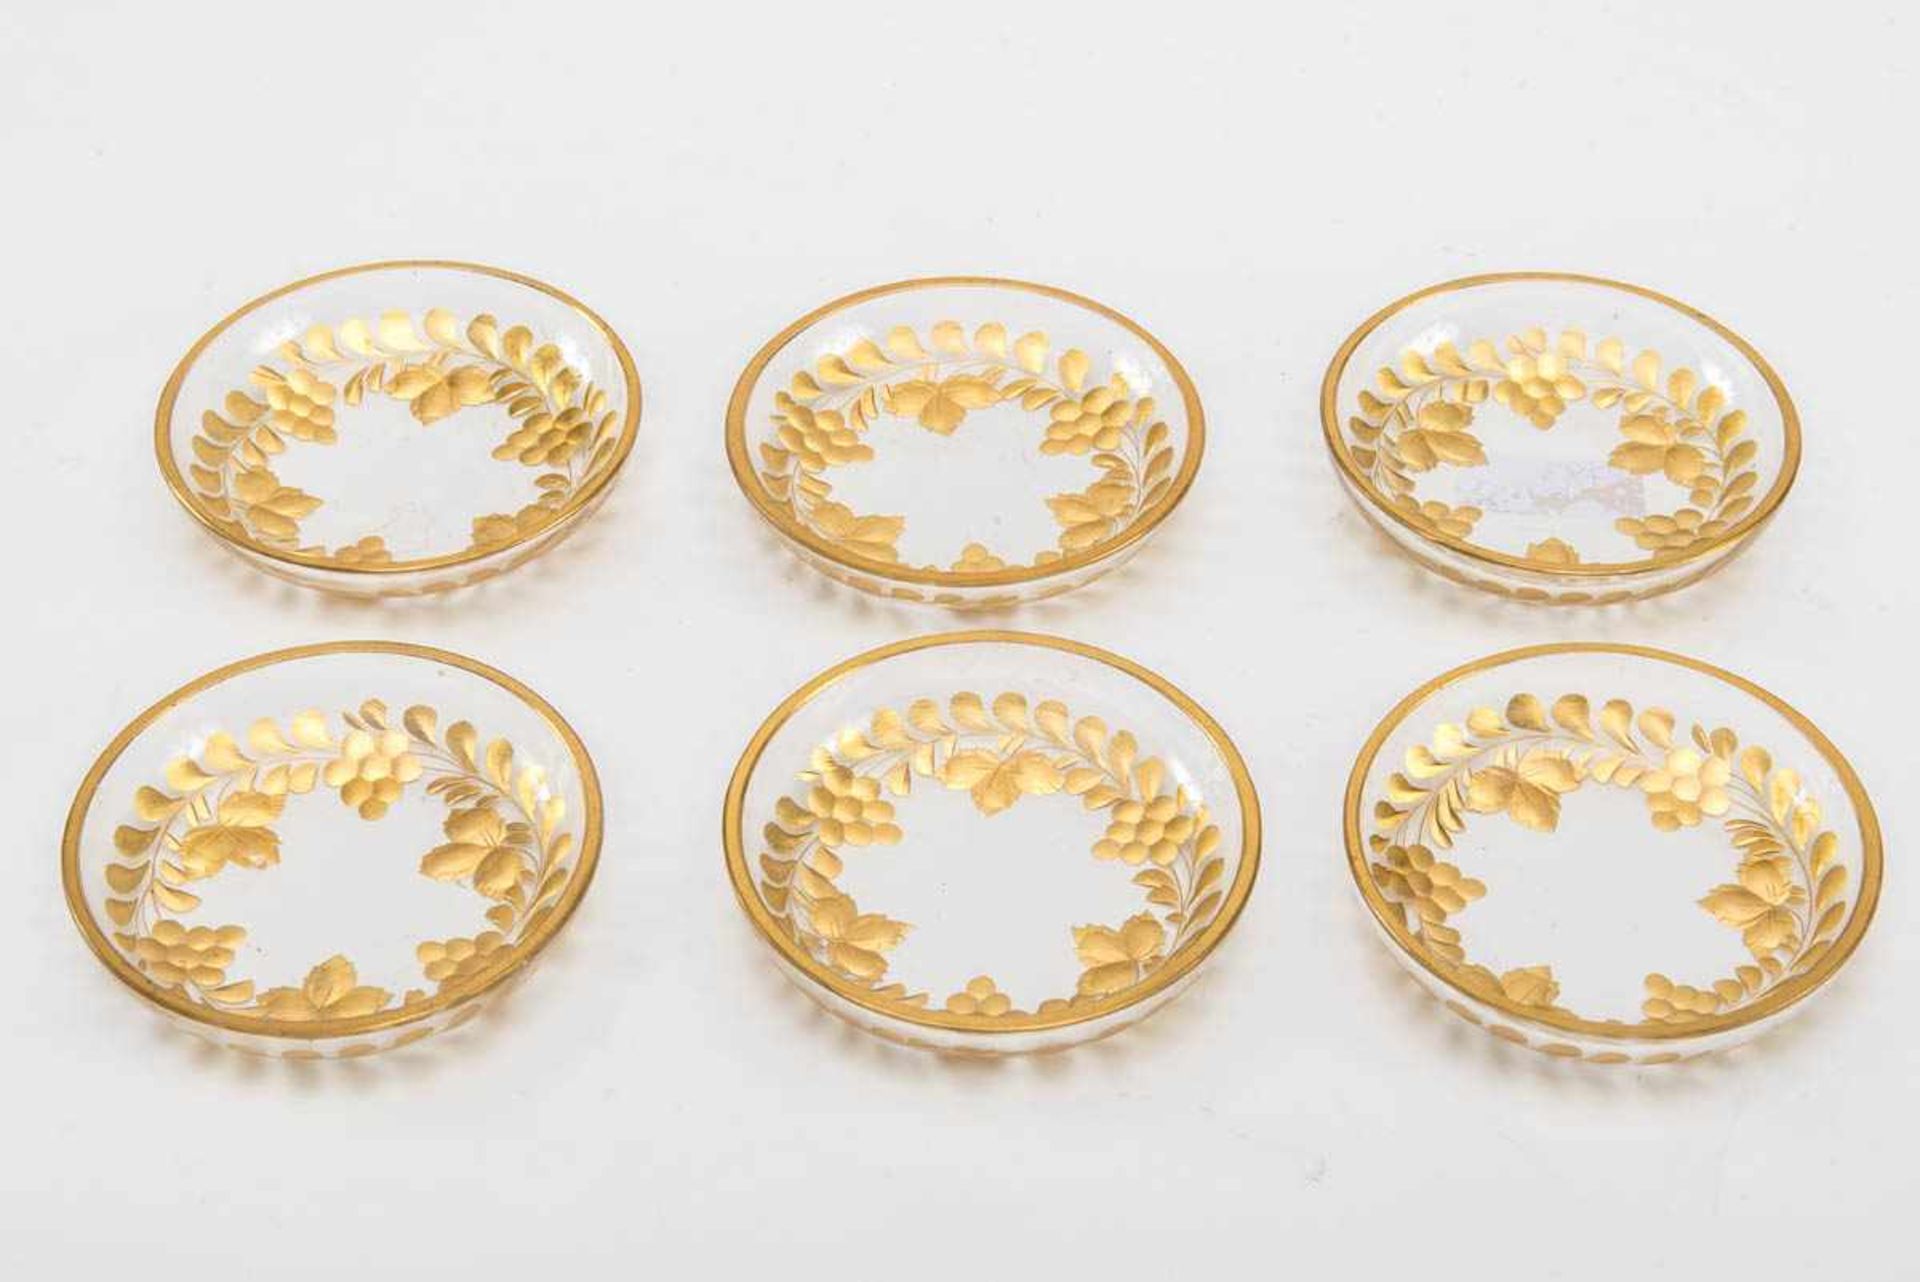 Sechs kleine Teller Farbloses Glas, geschliffen, mit Gold bemalt Runde flachgemuldete Form mit